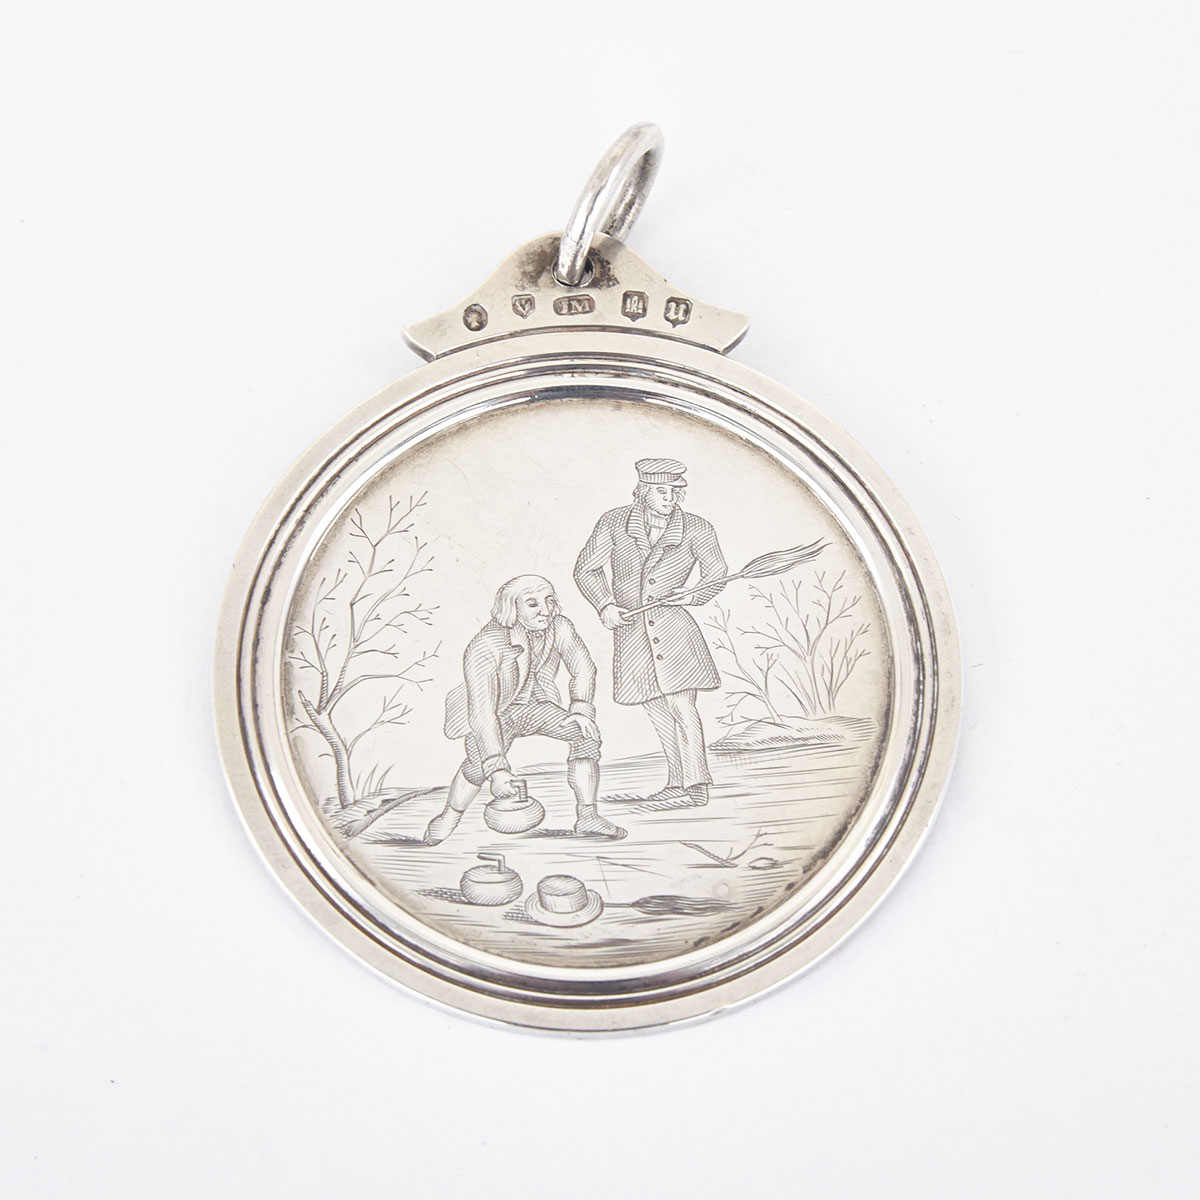 Victorian Scottish Silver Curling Medal, James McKay V, Edinburgh, 1851